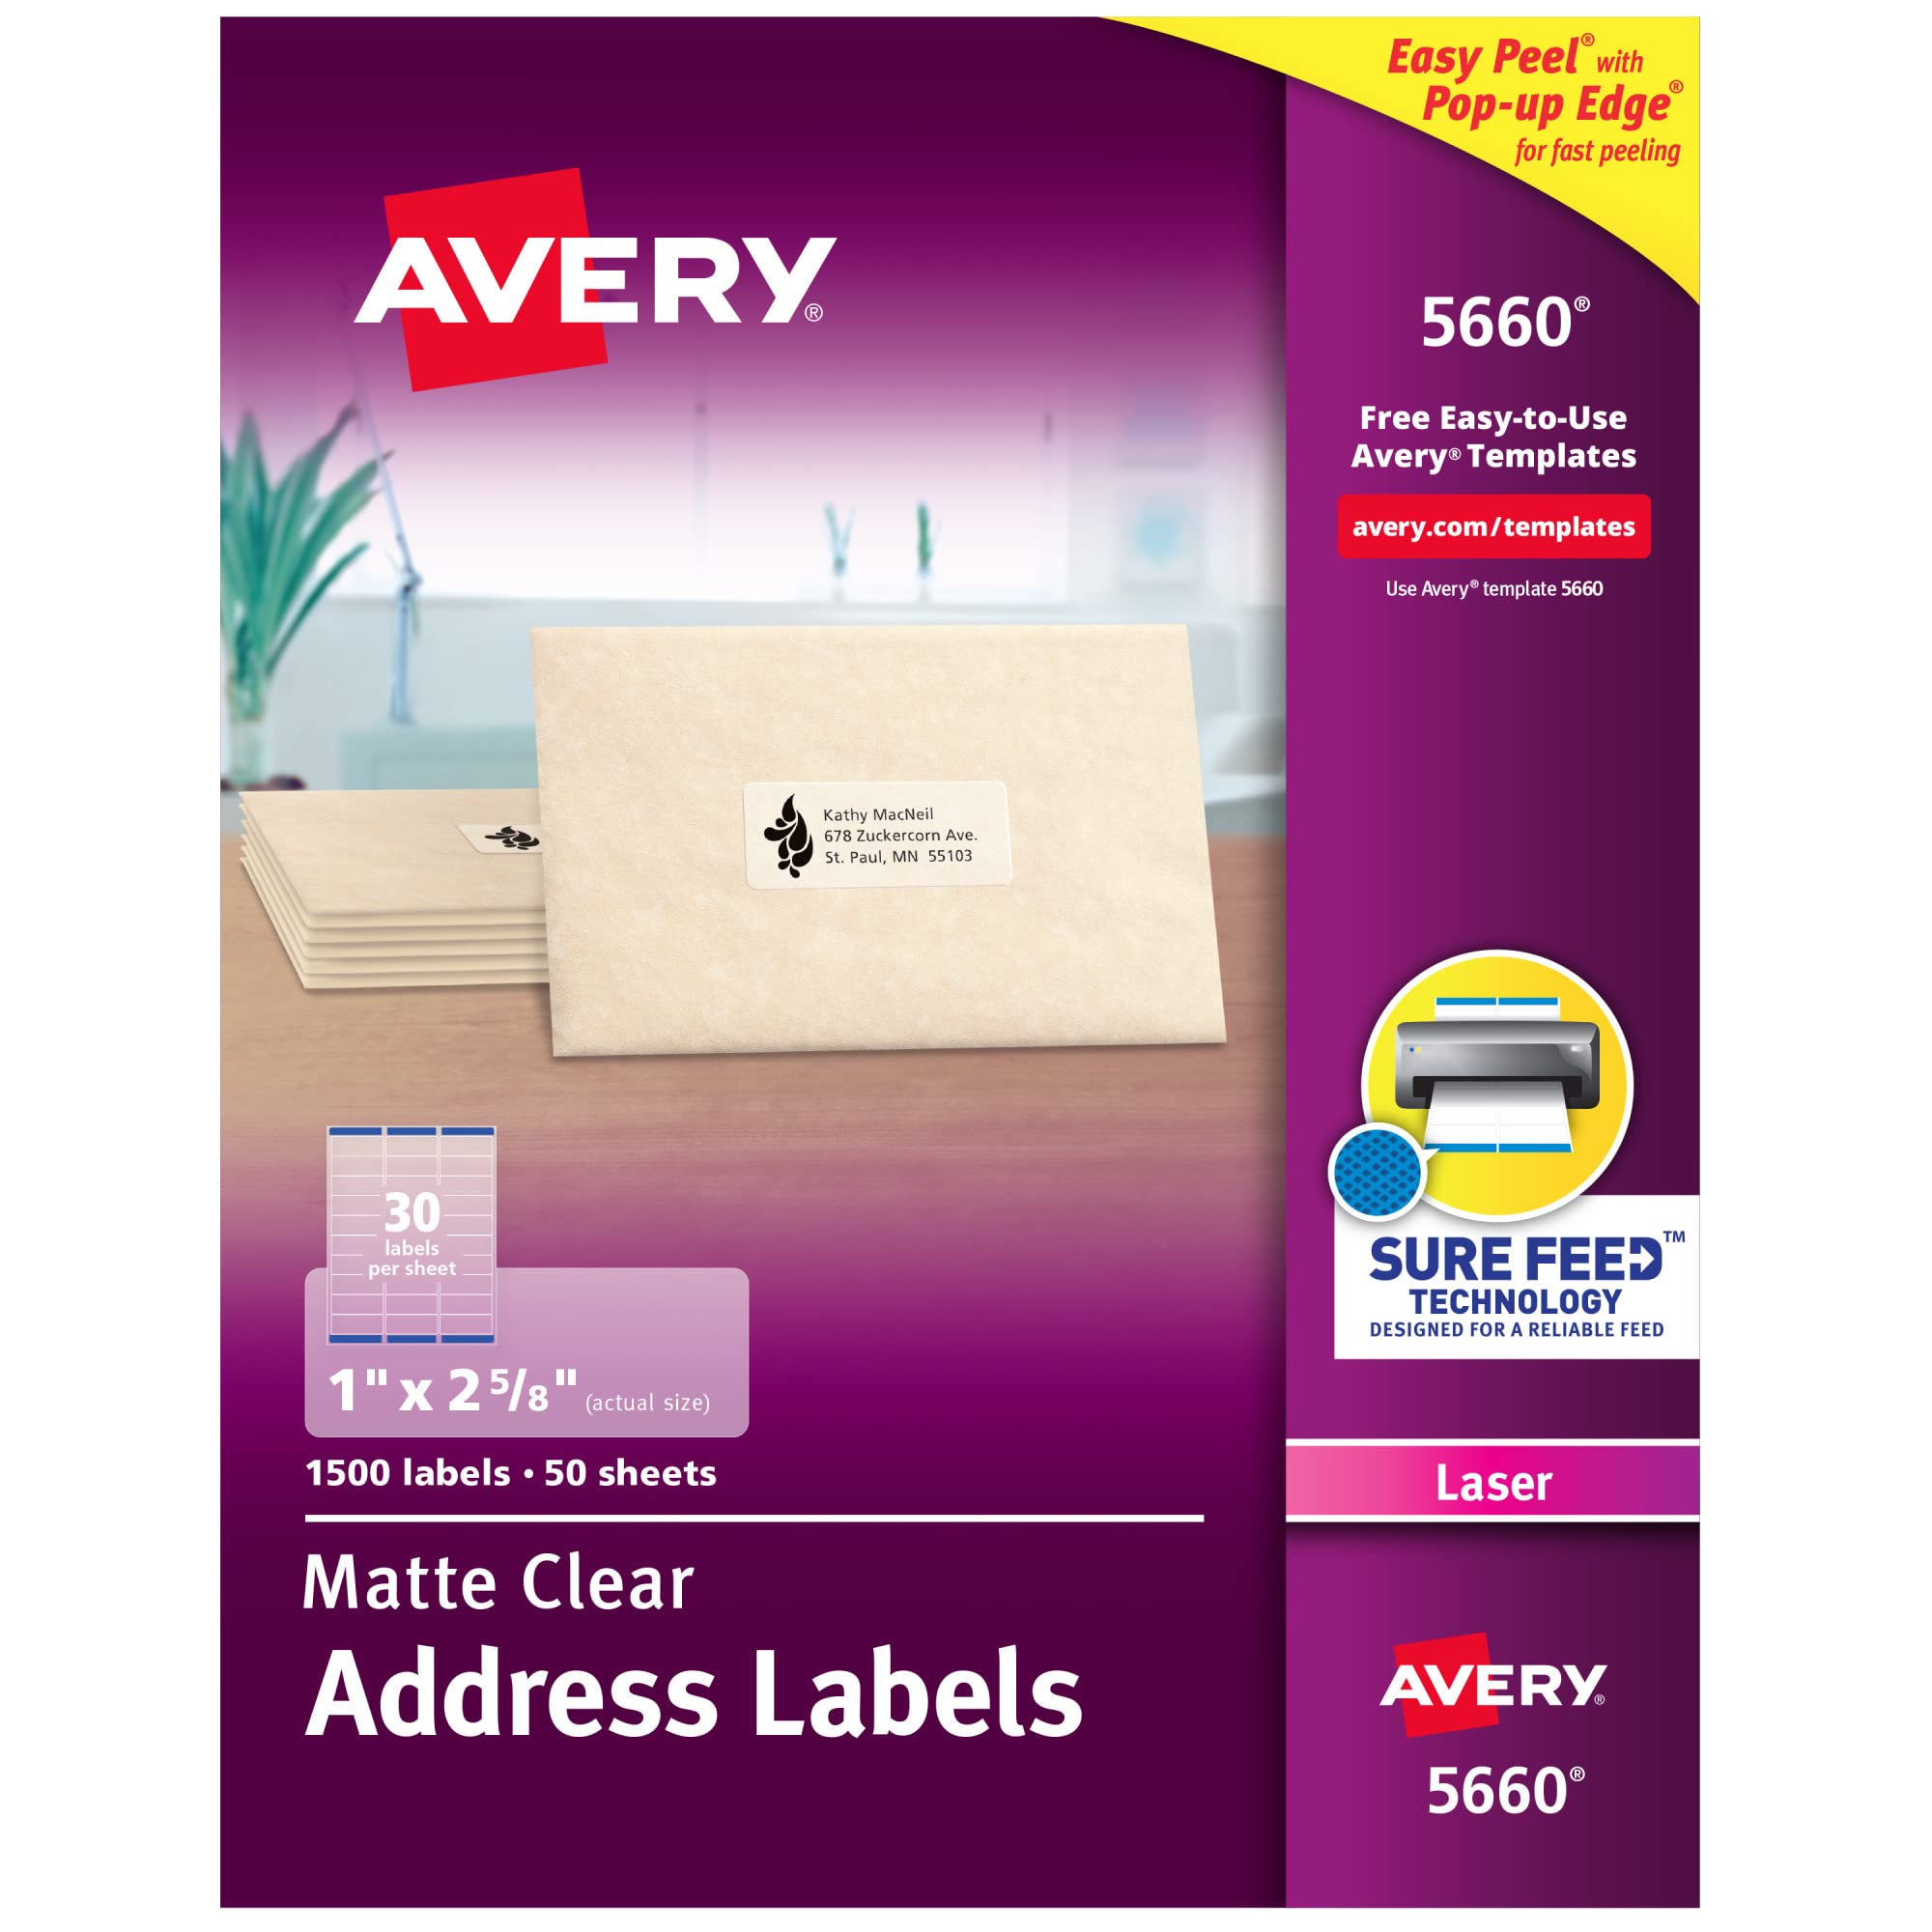 Avery Прозрачные адресные этикетки Easy Peel для лазерных принтеров 1 '' x 2-5/8 ''